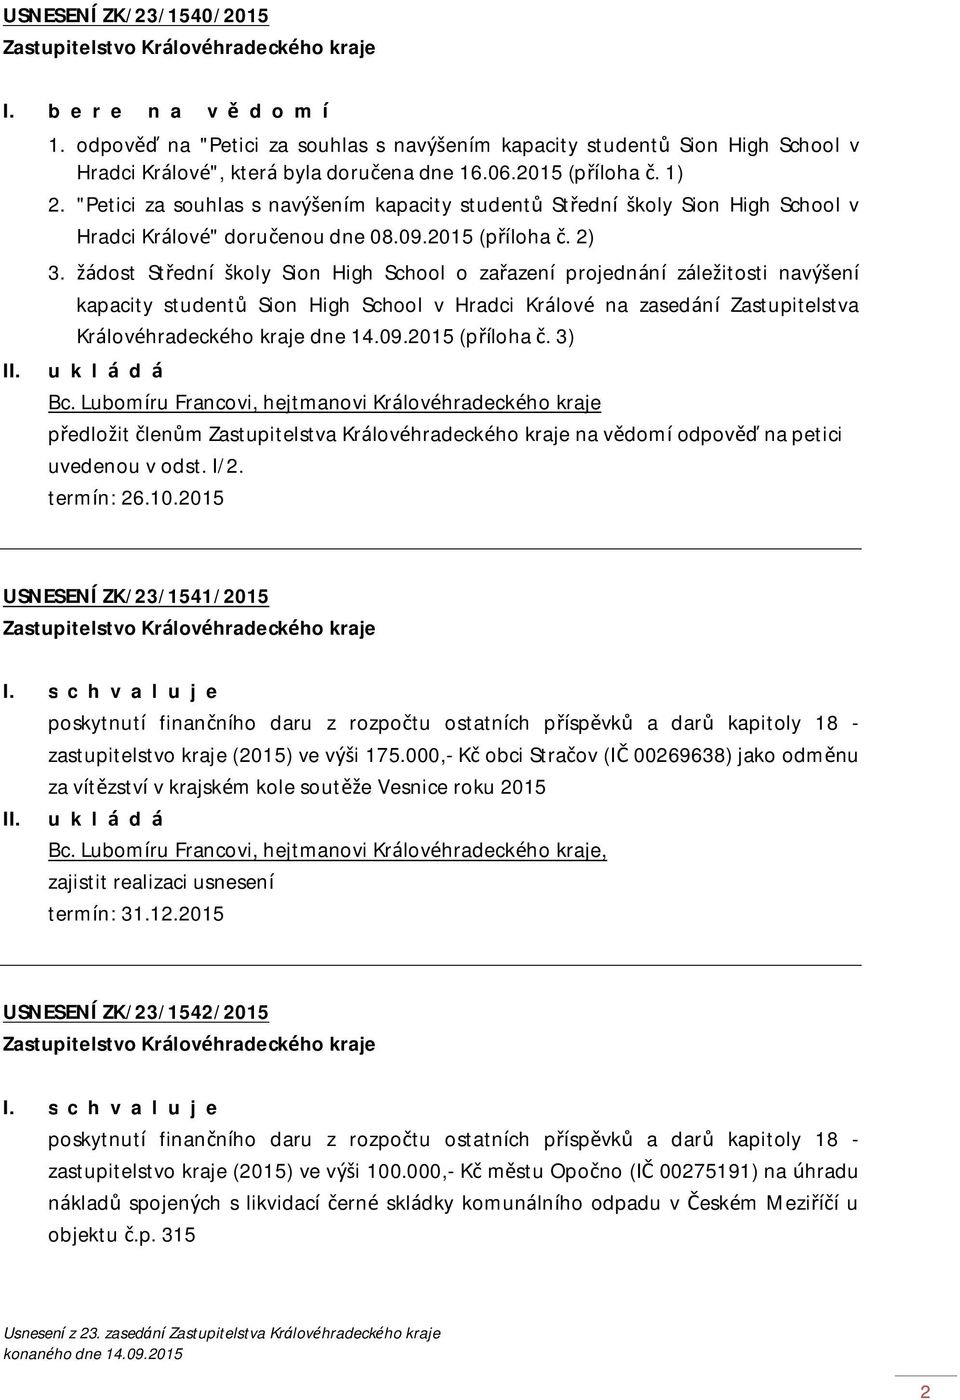 žádost Střední školy Sion High School o zařazení projednání záležitosti navýšení kapacity studentů Sion High School v Hradci Králové na zasedání Zastupitelstva Královéhradeckého kraje dne 14.09.